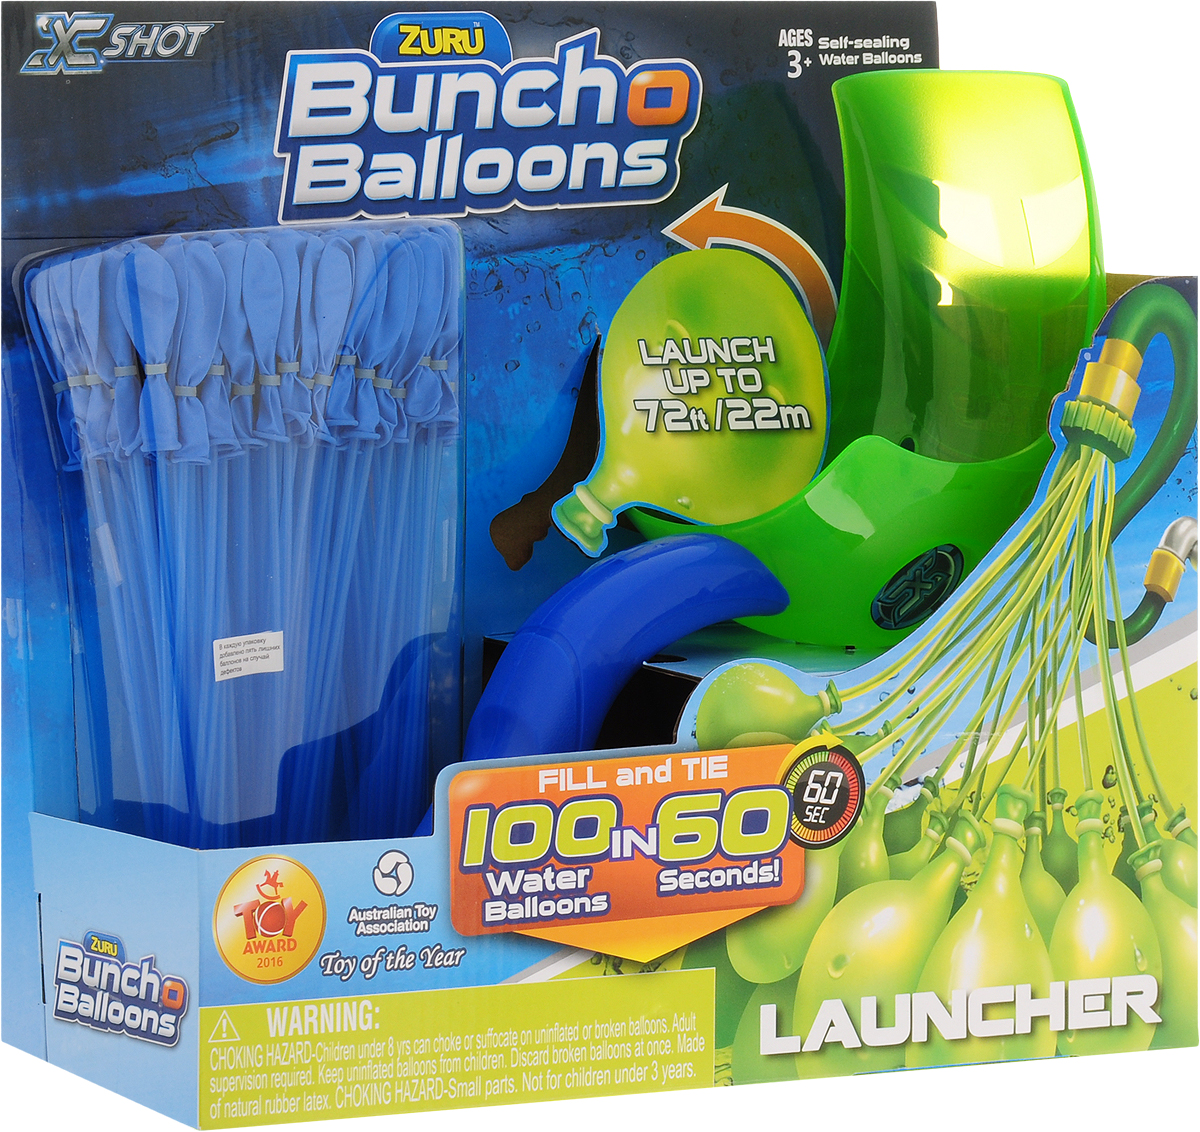 Zuru Водяное оружие Bunch O Balloons с пусковым устройством цвет зеленый синий